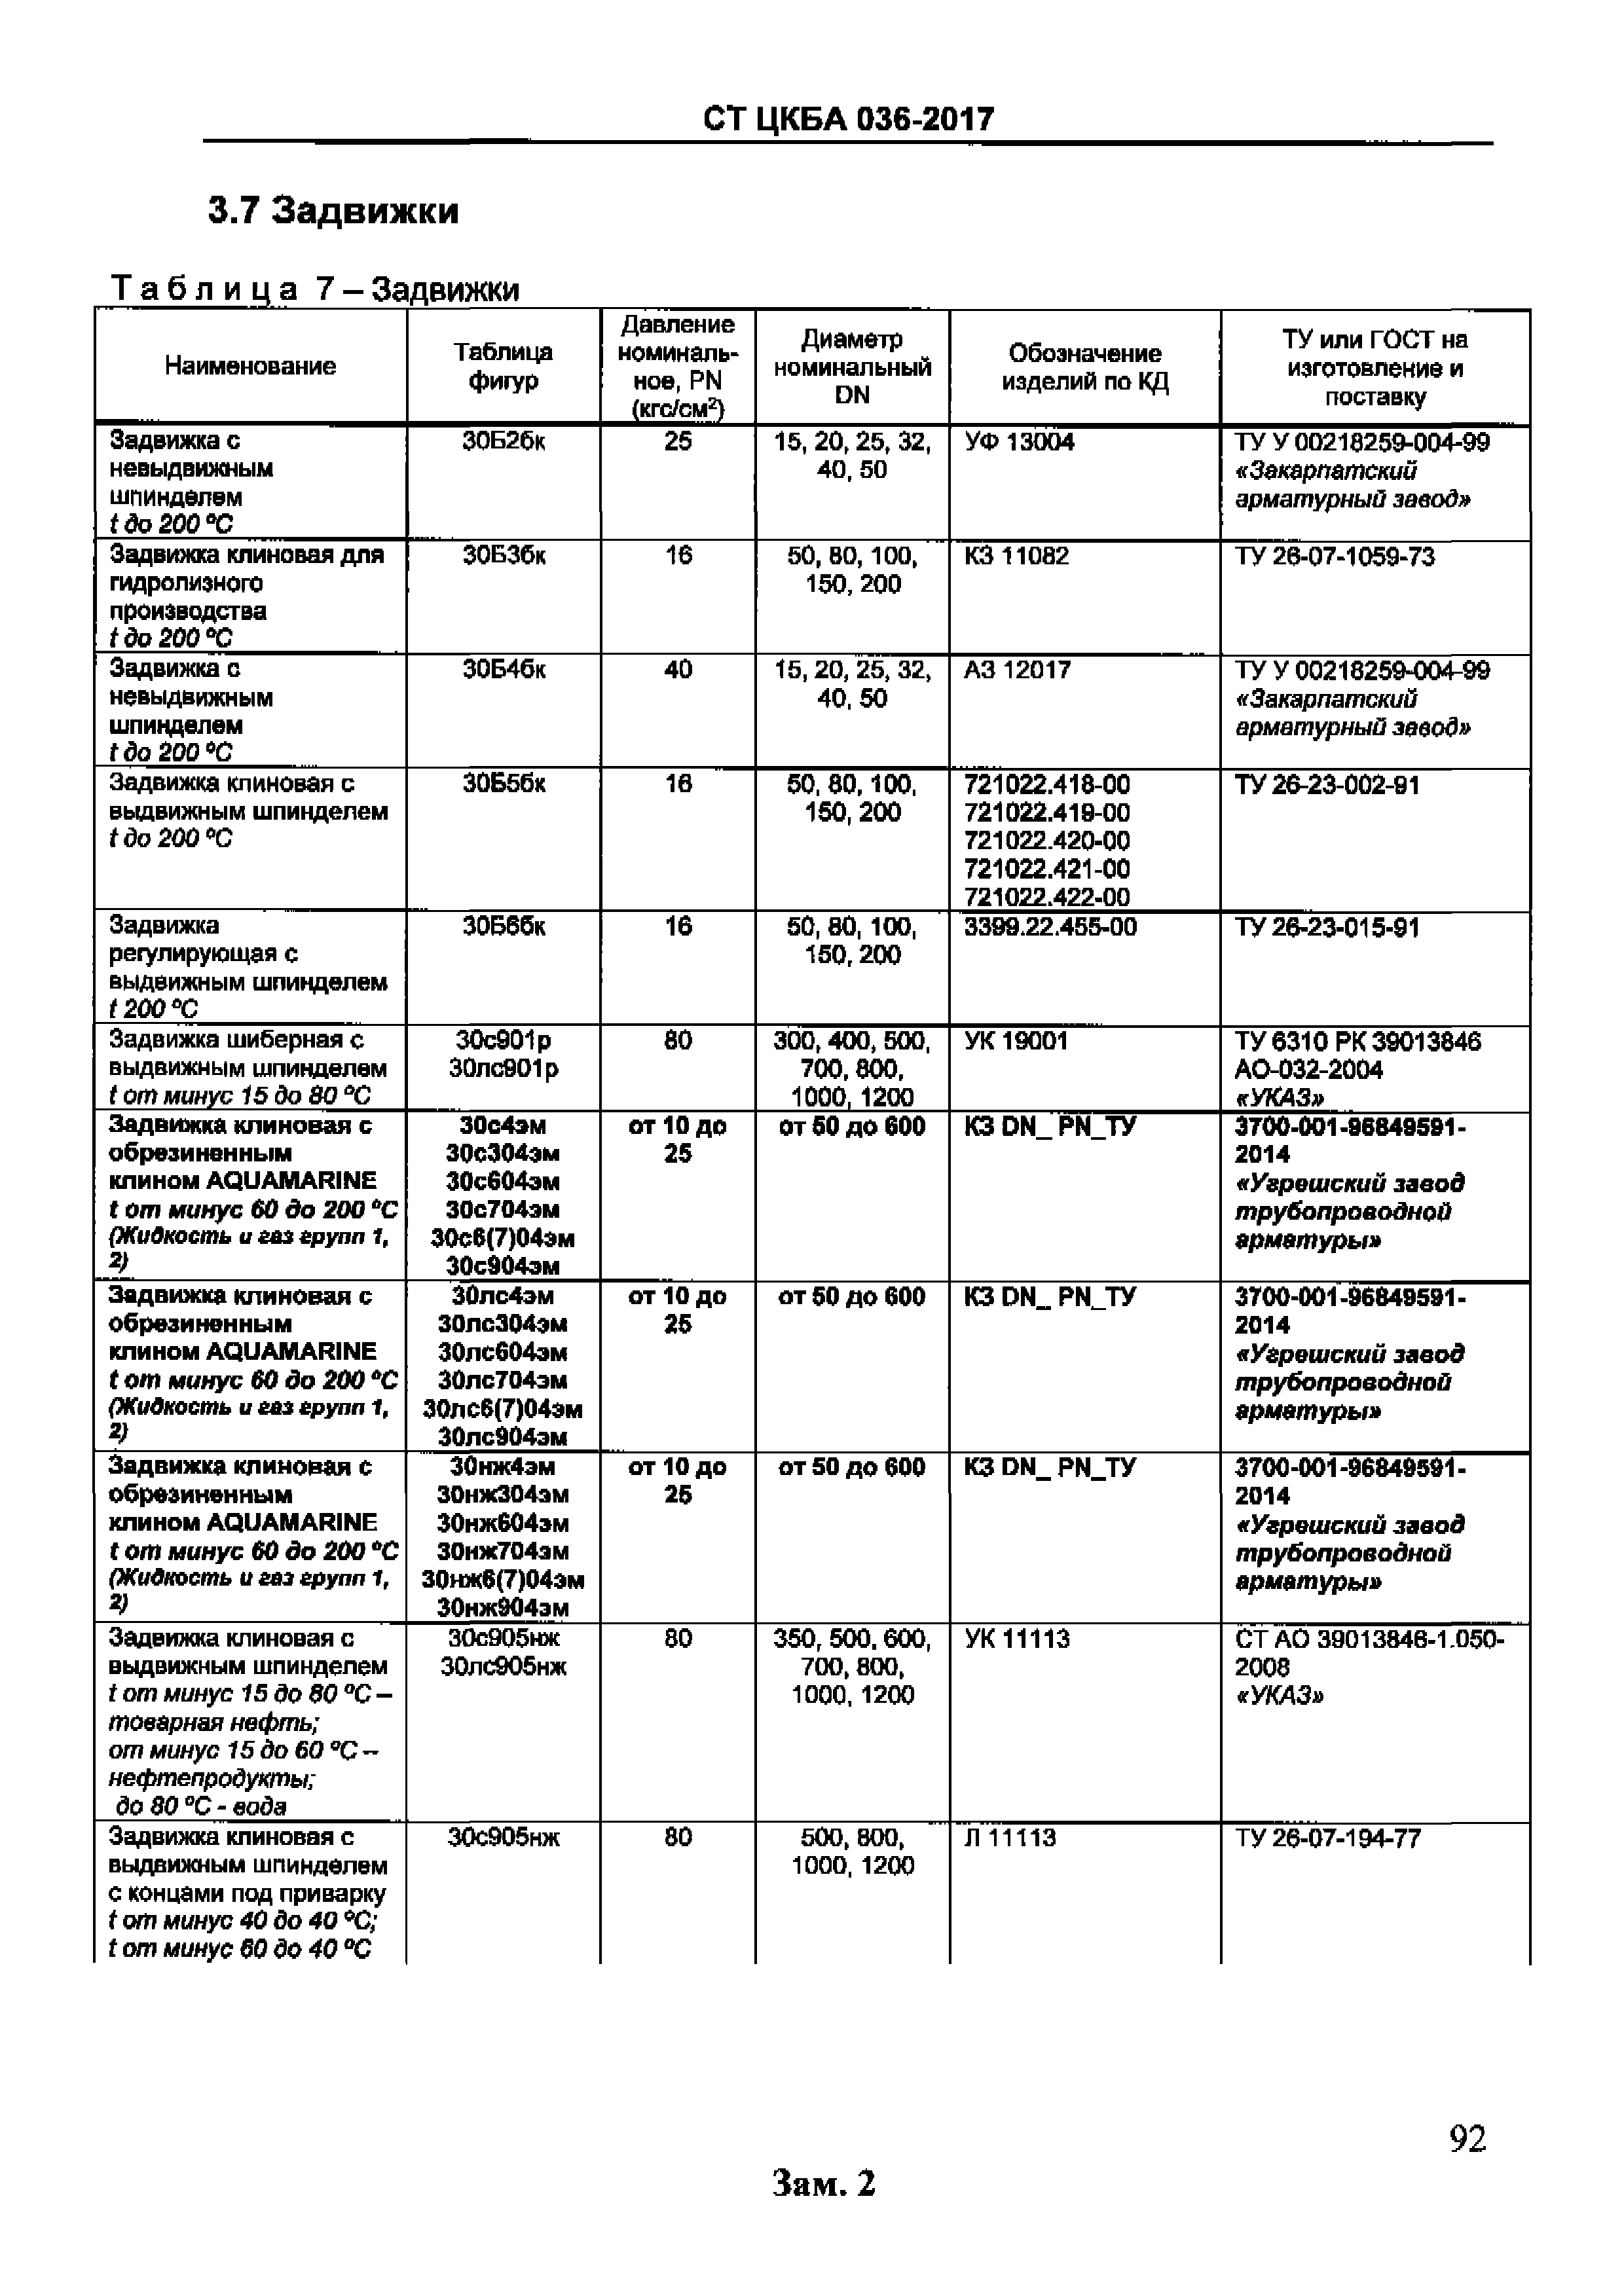 Таблица фигур арматуры ЦКБА